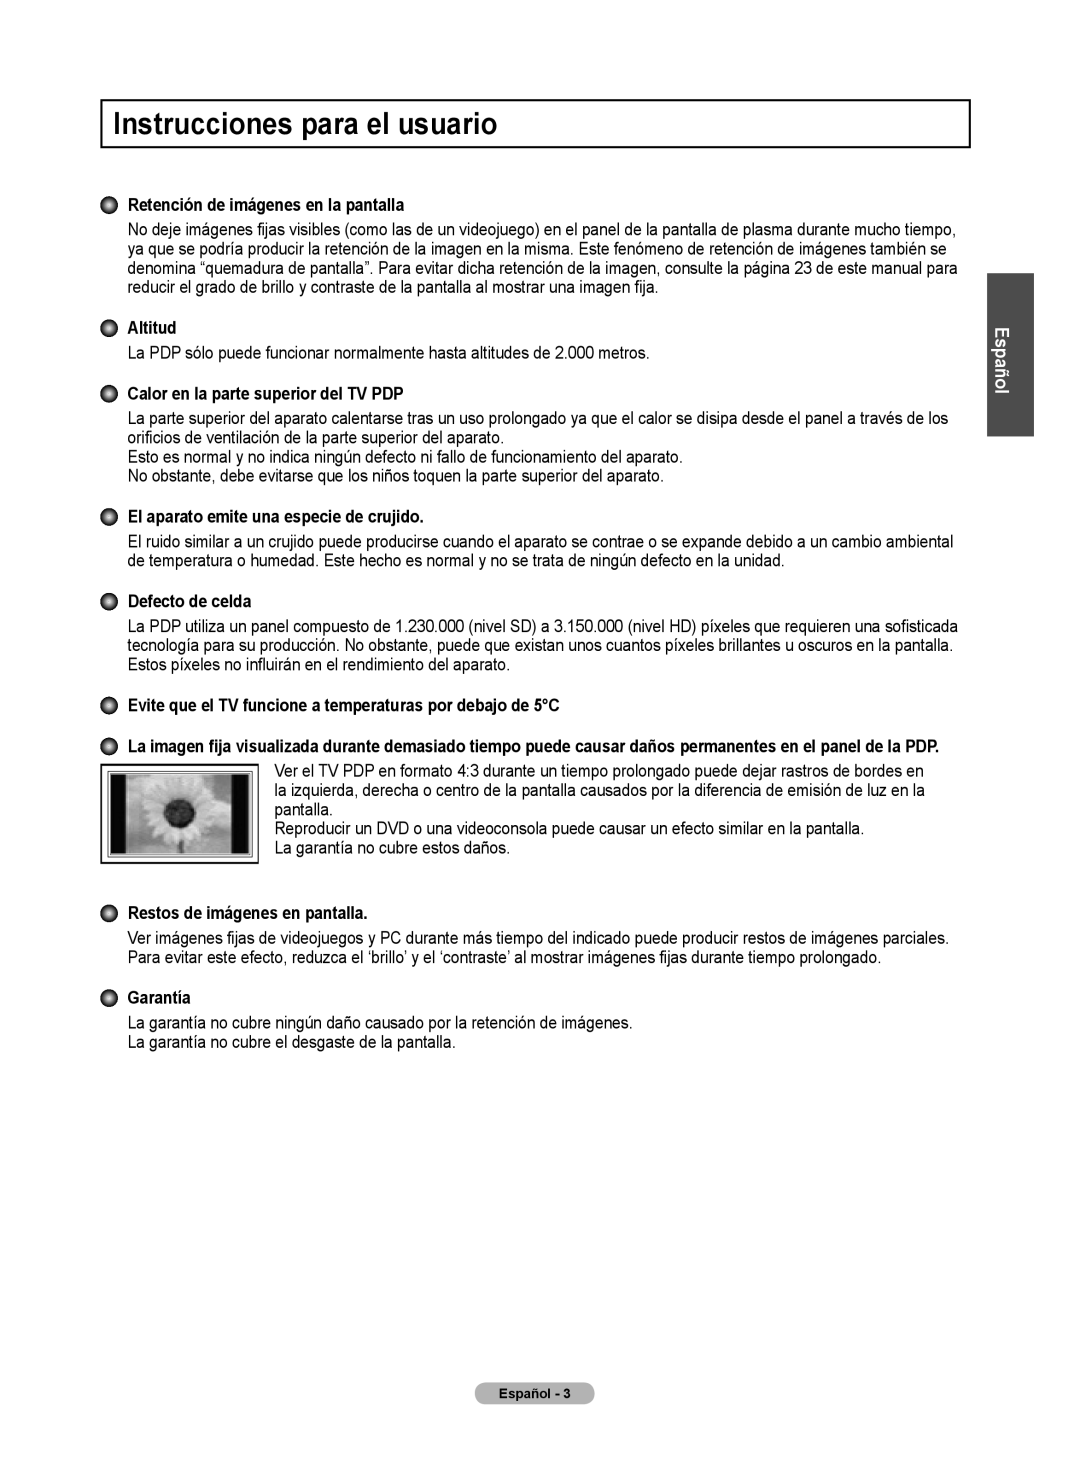 Samsung 460 Instrucciones para el usuario, Retención de imágenes en la pantalla, Altitud, Defecto de celda, Garantía 